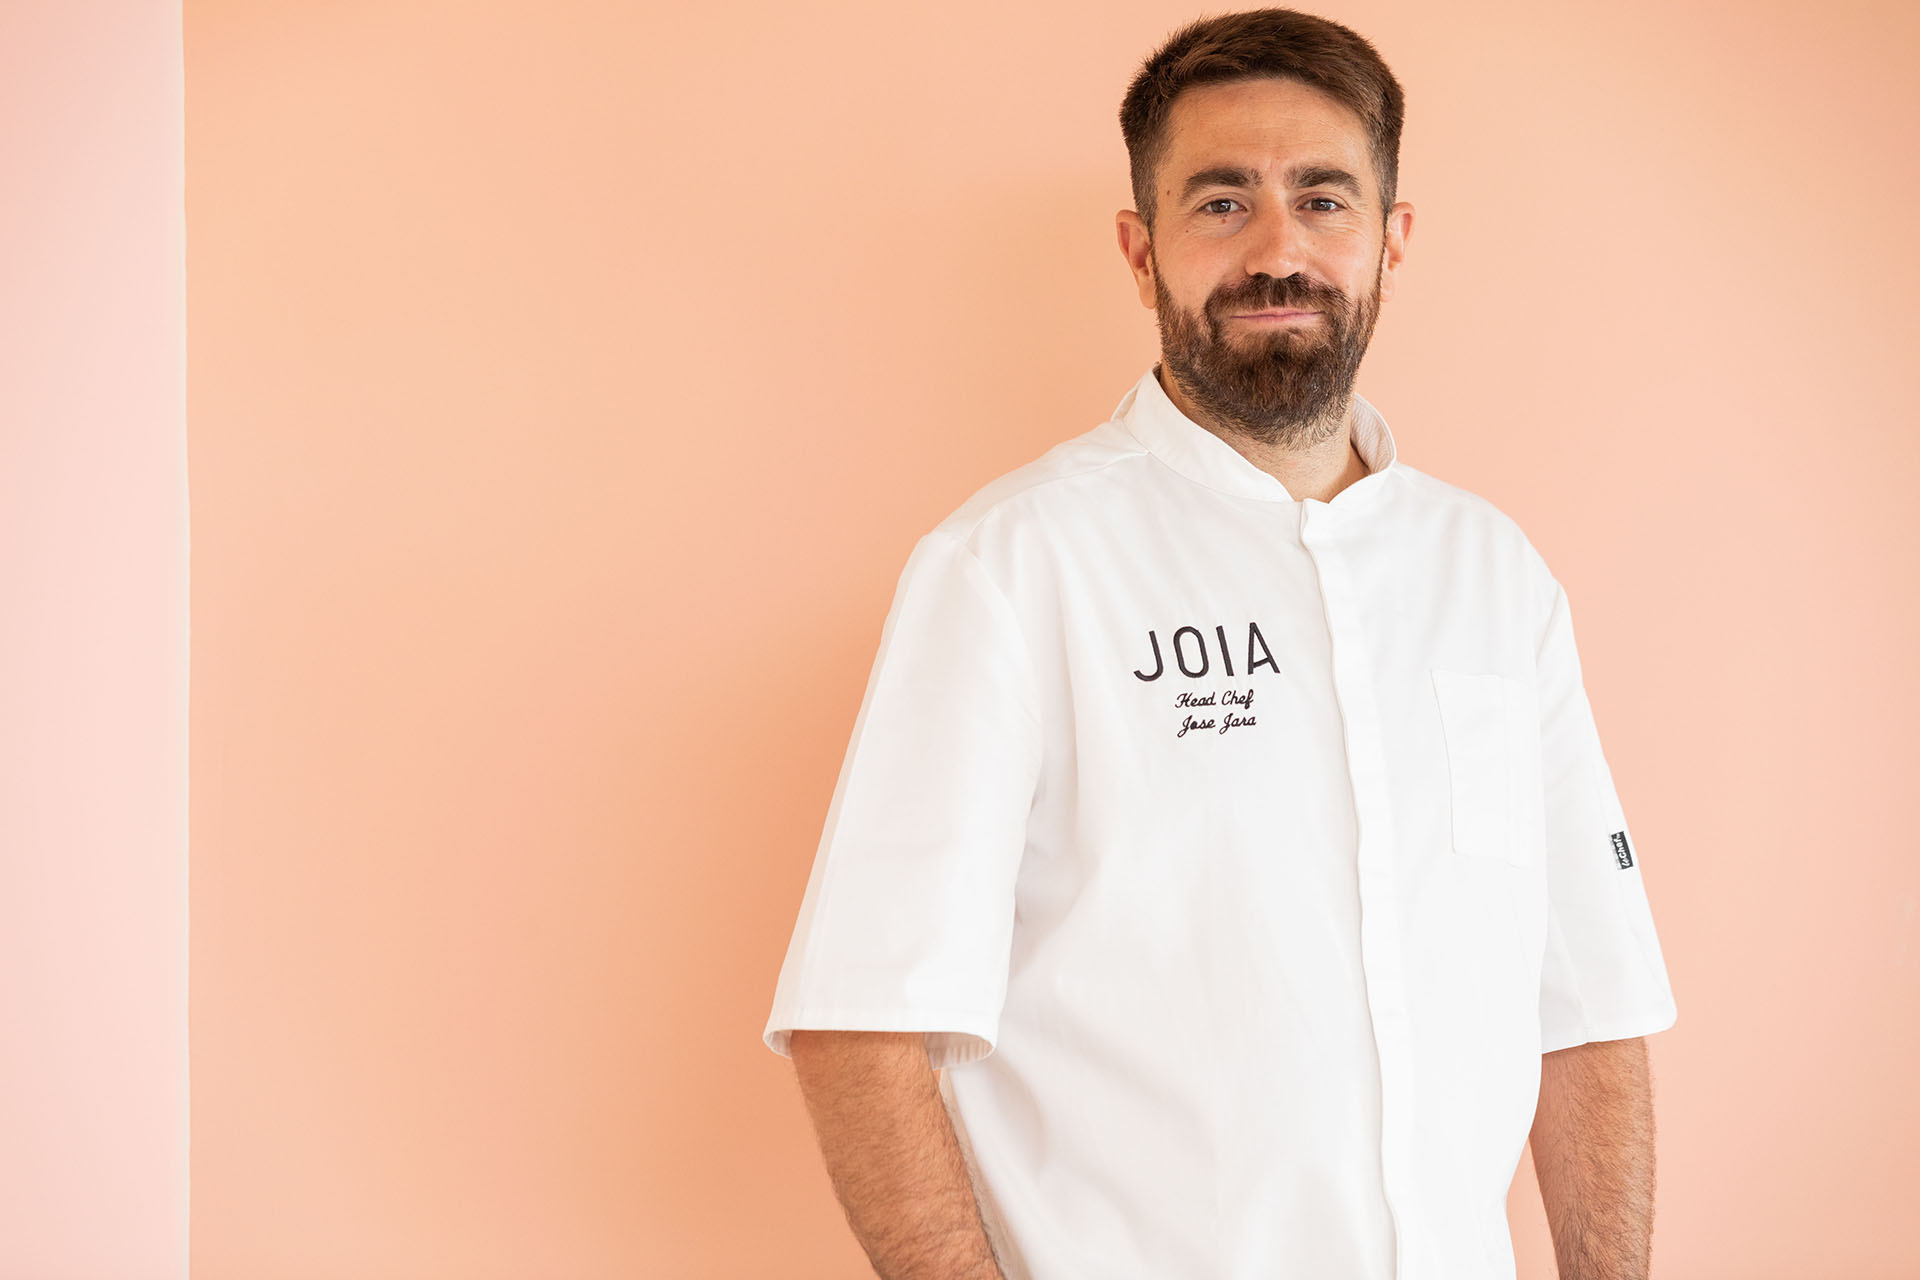 Chef Jose Jara